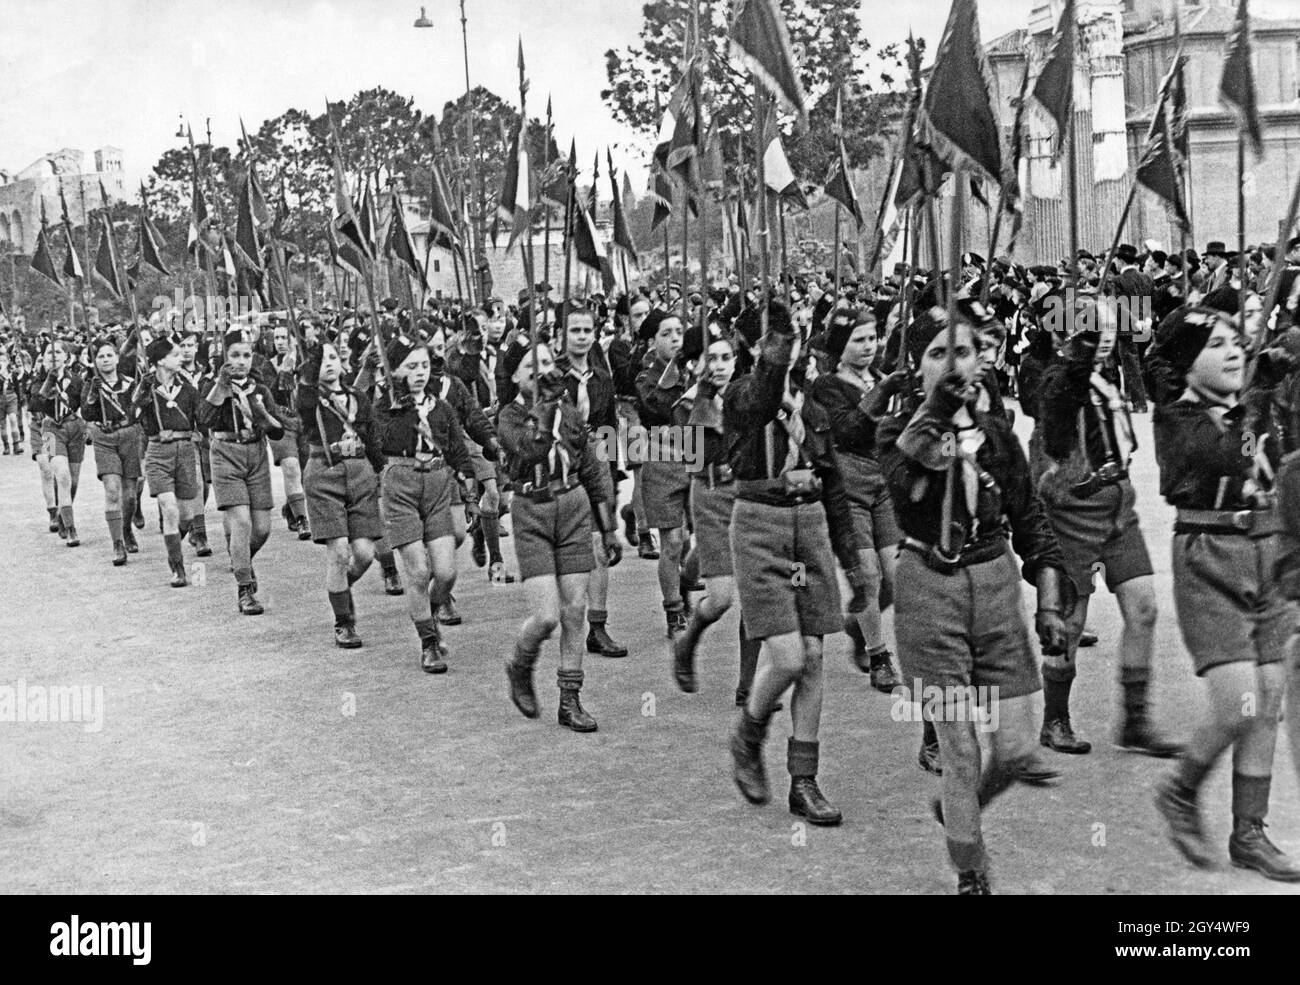 Ragazzi dell'organizzazione fascista per la gioventù Opera Nazionale Balilla marciano in una sfilata in Italia nel 1936, tenendo i loro pennanti in alto. [traduzione automatizzata] Foto Stock